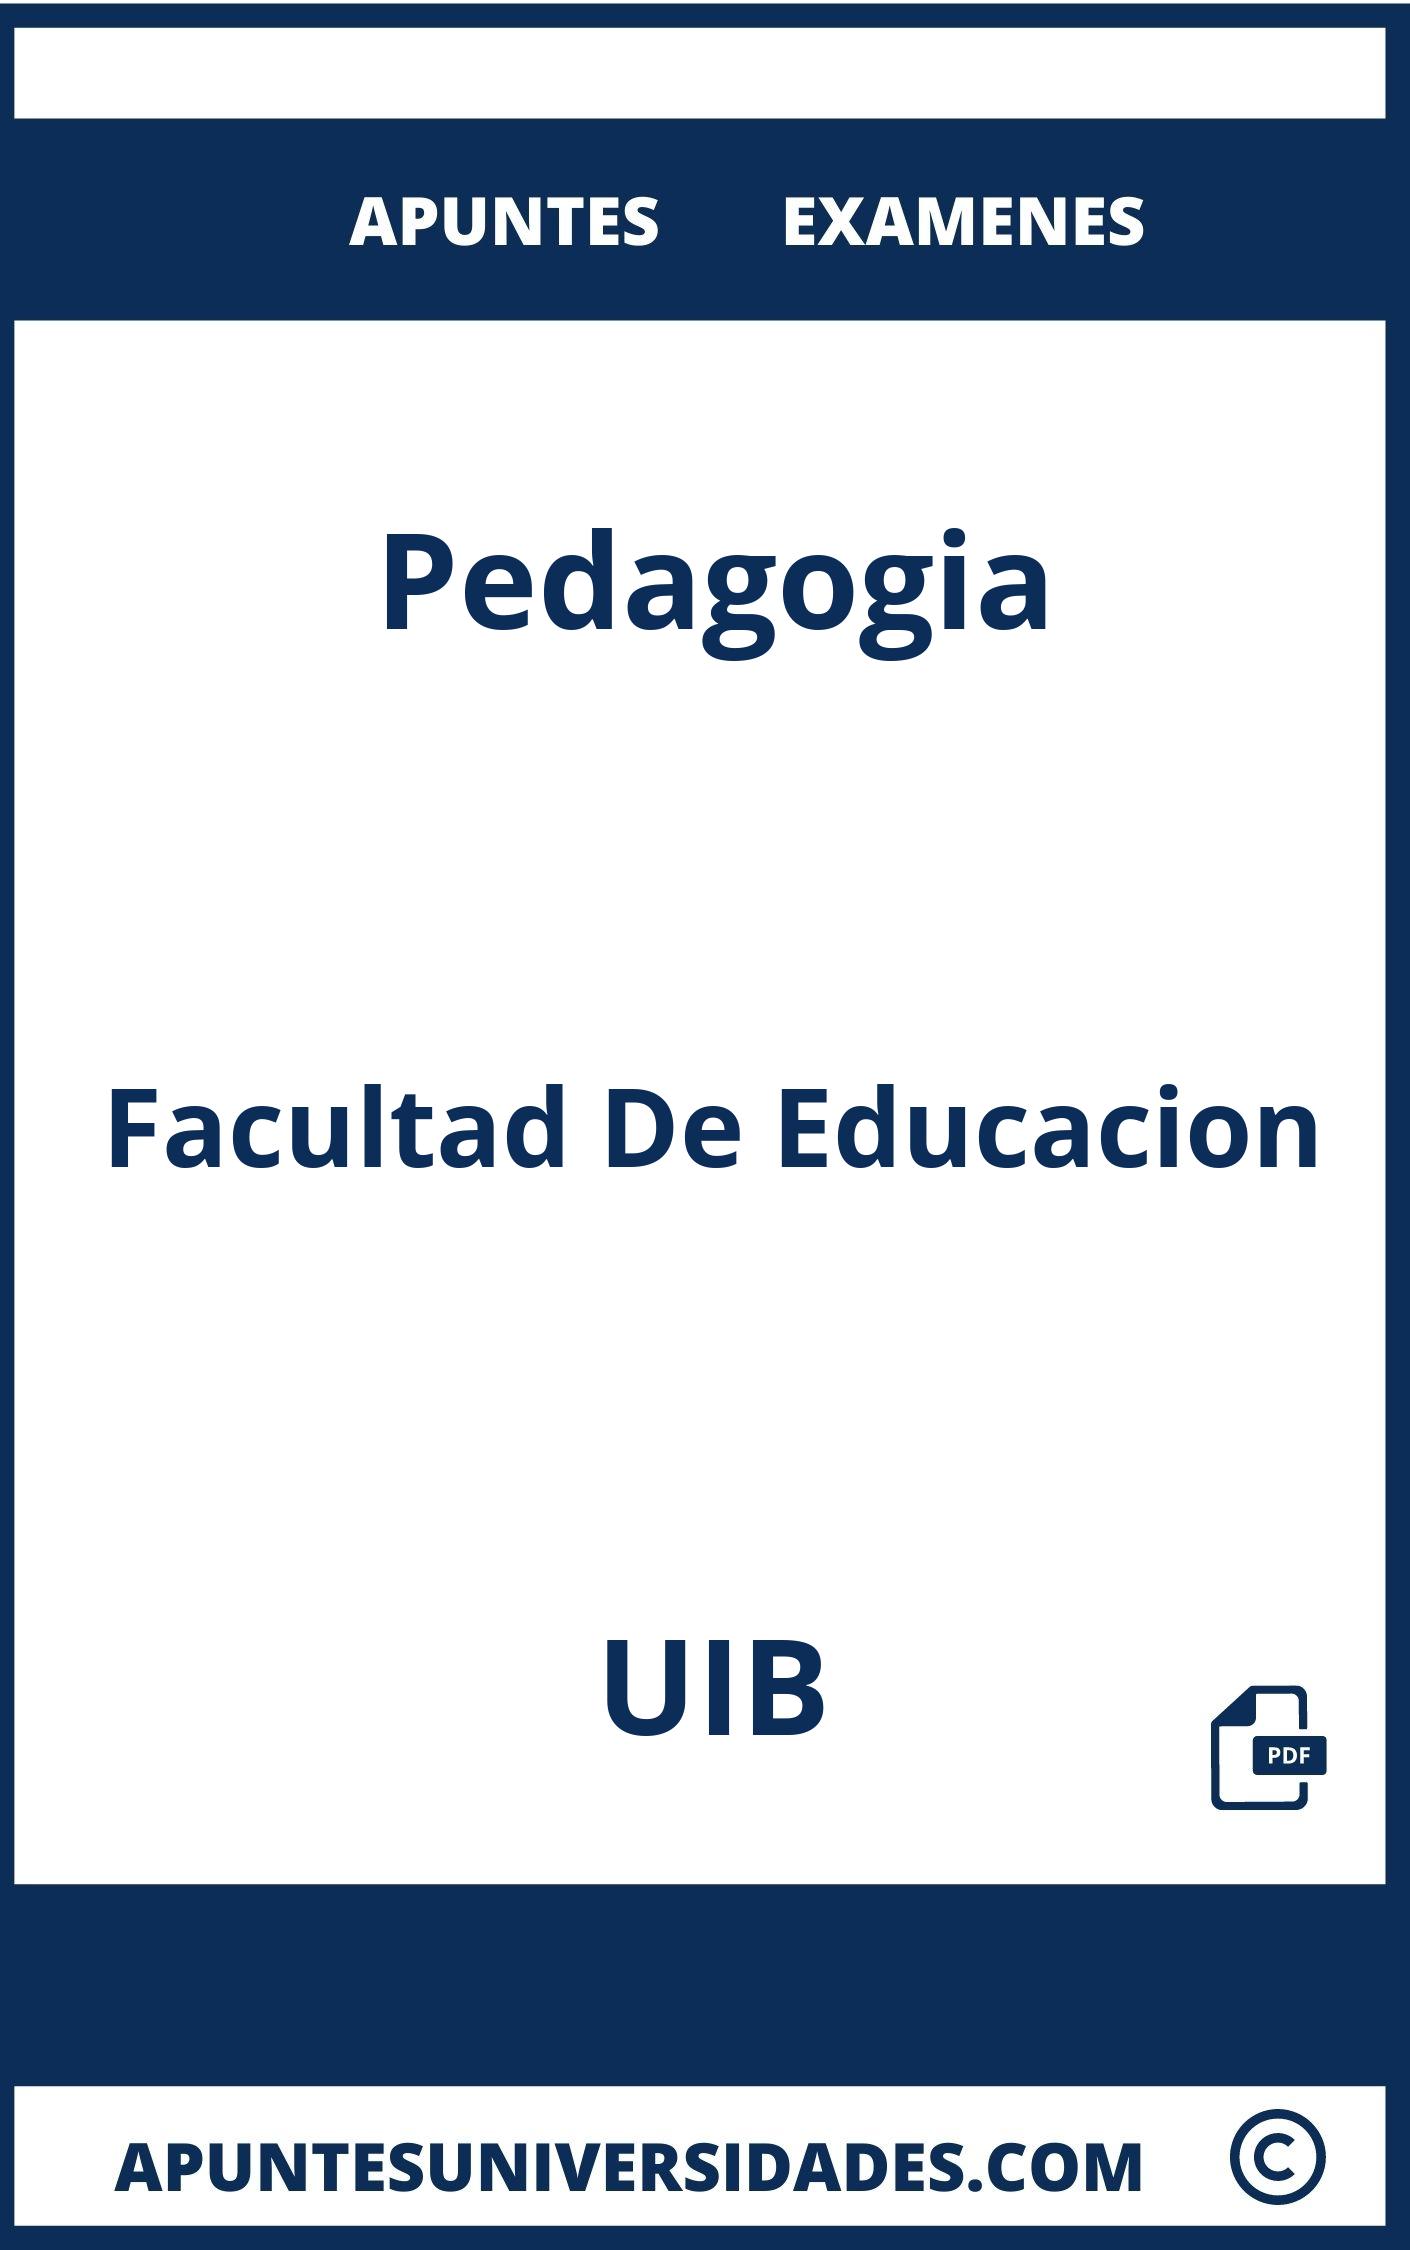 Apuntes y Examenes de Pedagogia UIB